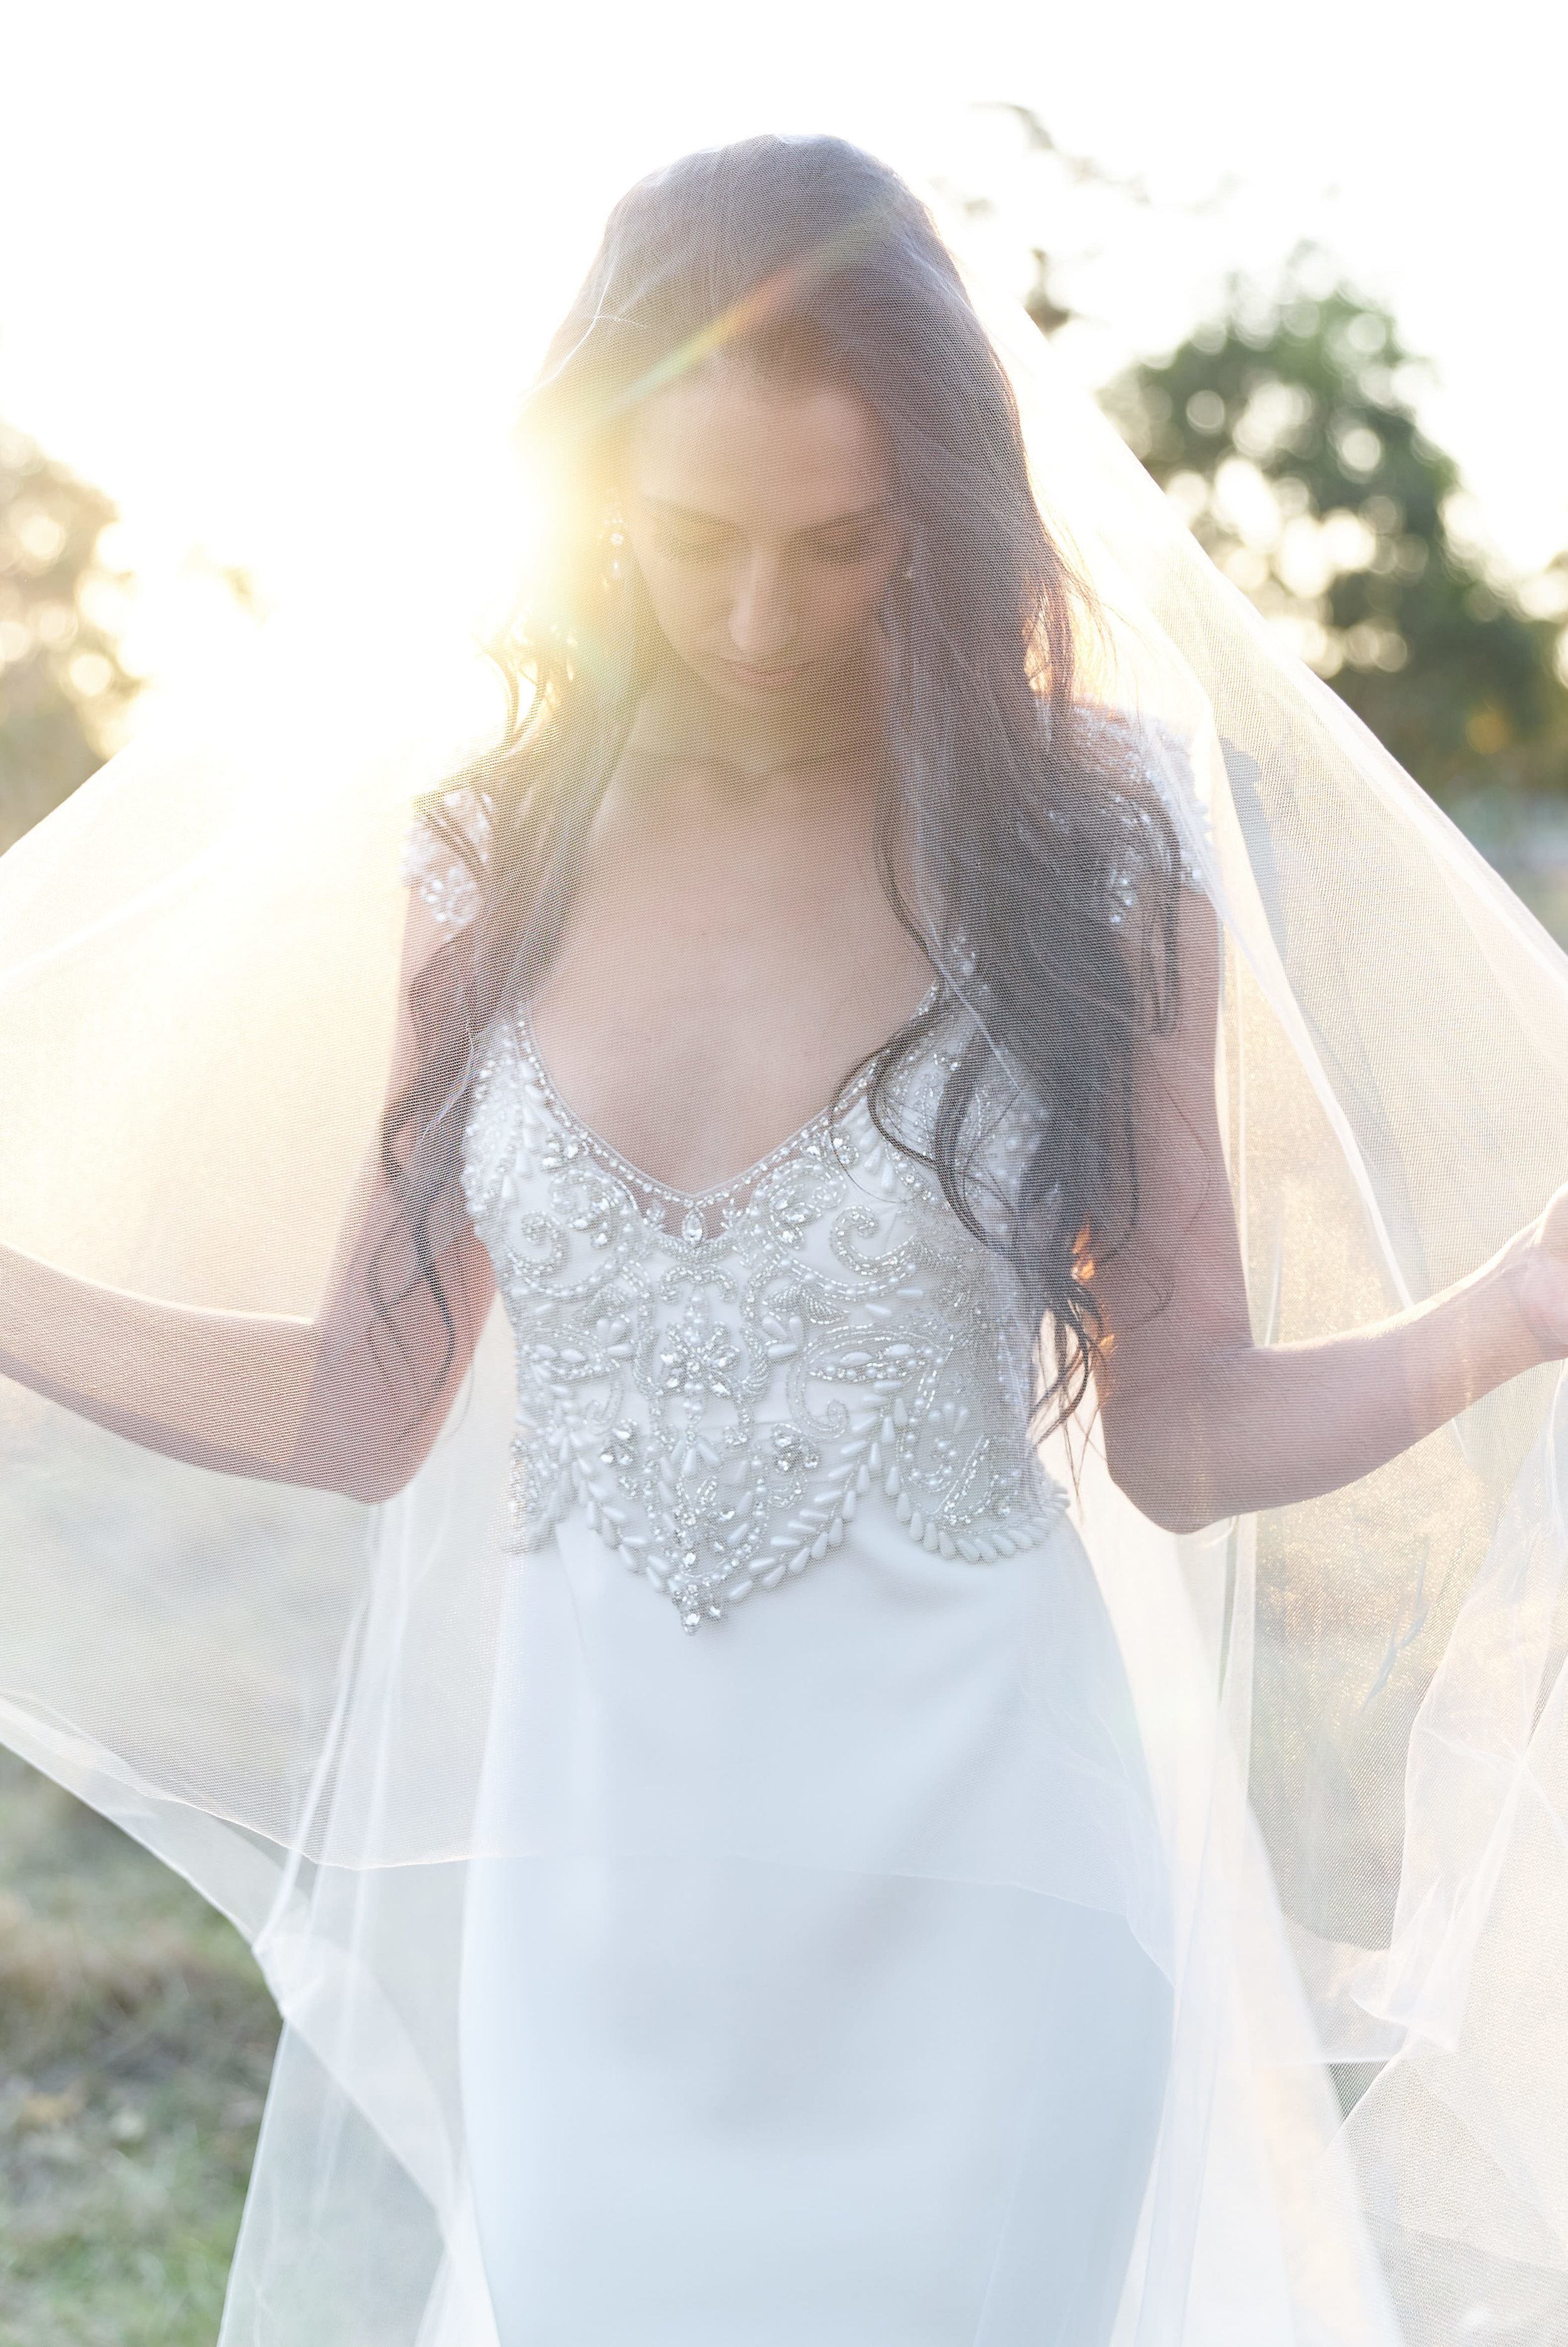 Anna Campbell Bridal | Raine Dress | Embellished vintage-inspired wedding dress